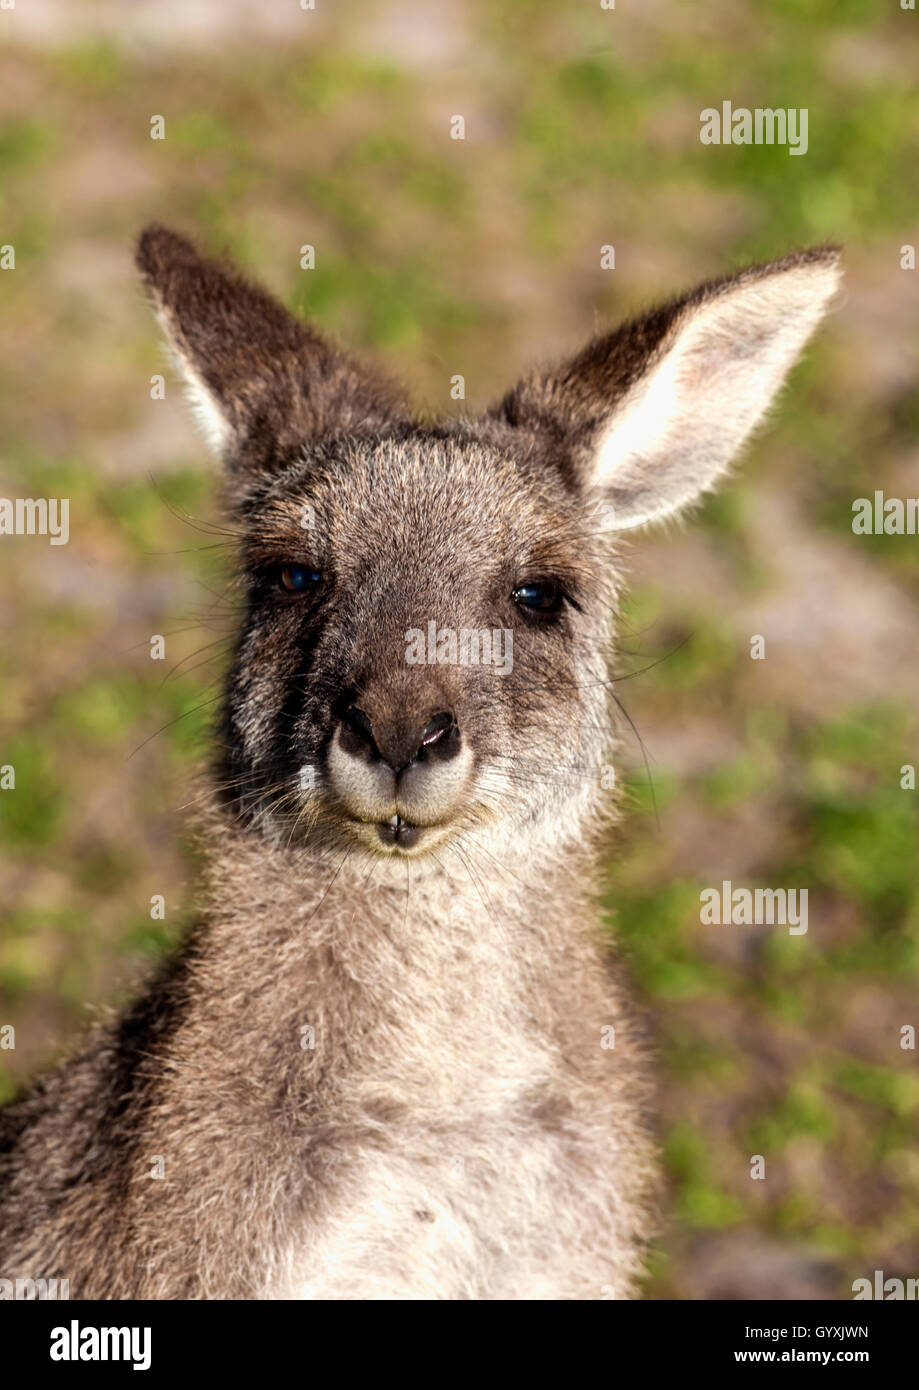 Young kangaroo head and shoulders Stock Photo